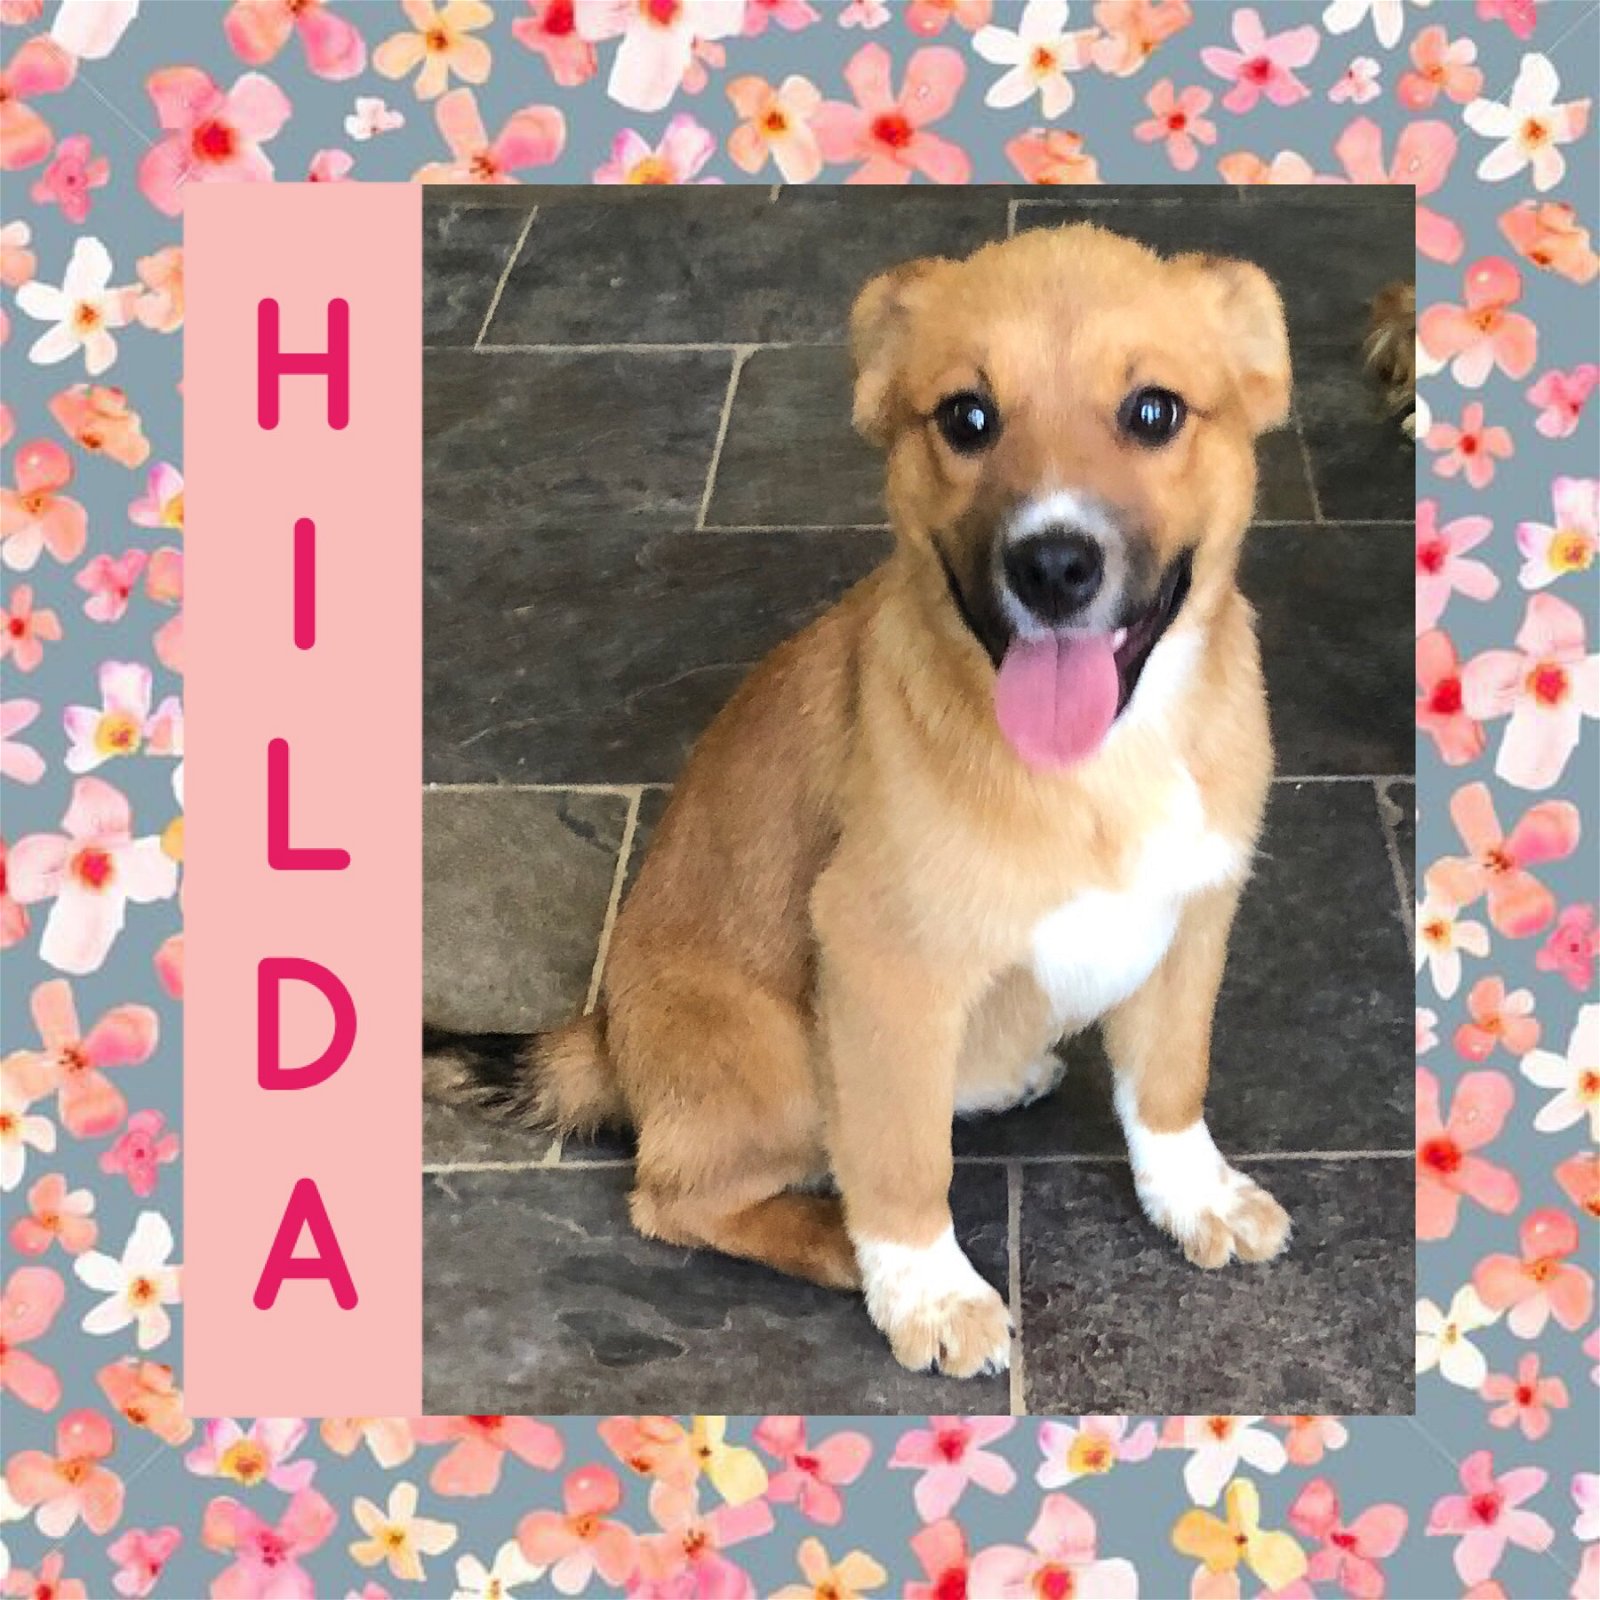 adoptable Dog in Littleton, CO named Hilda